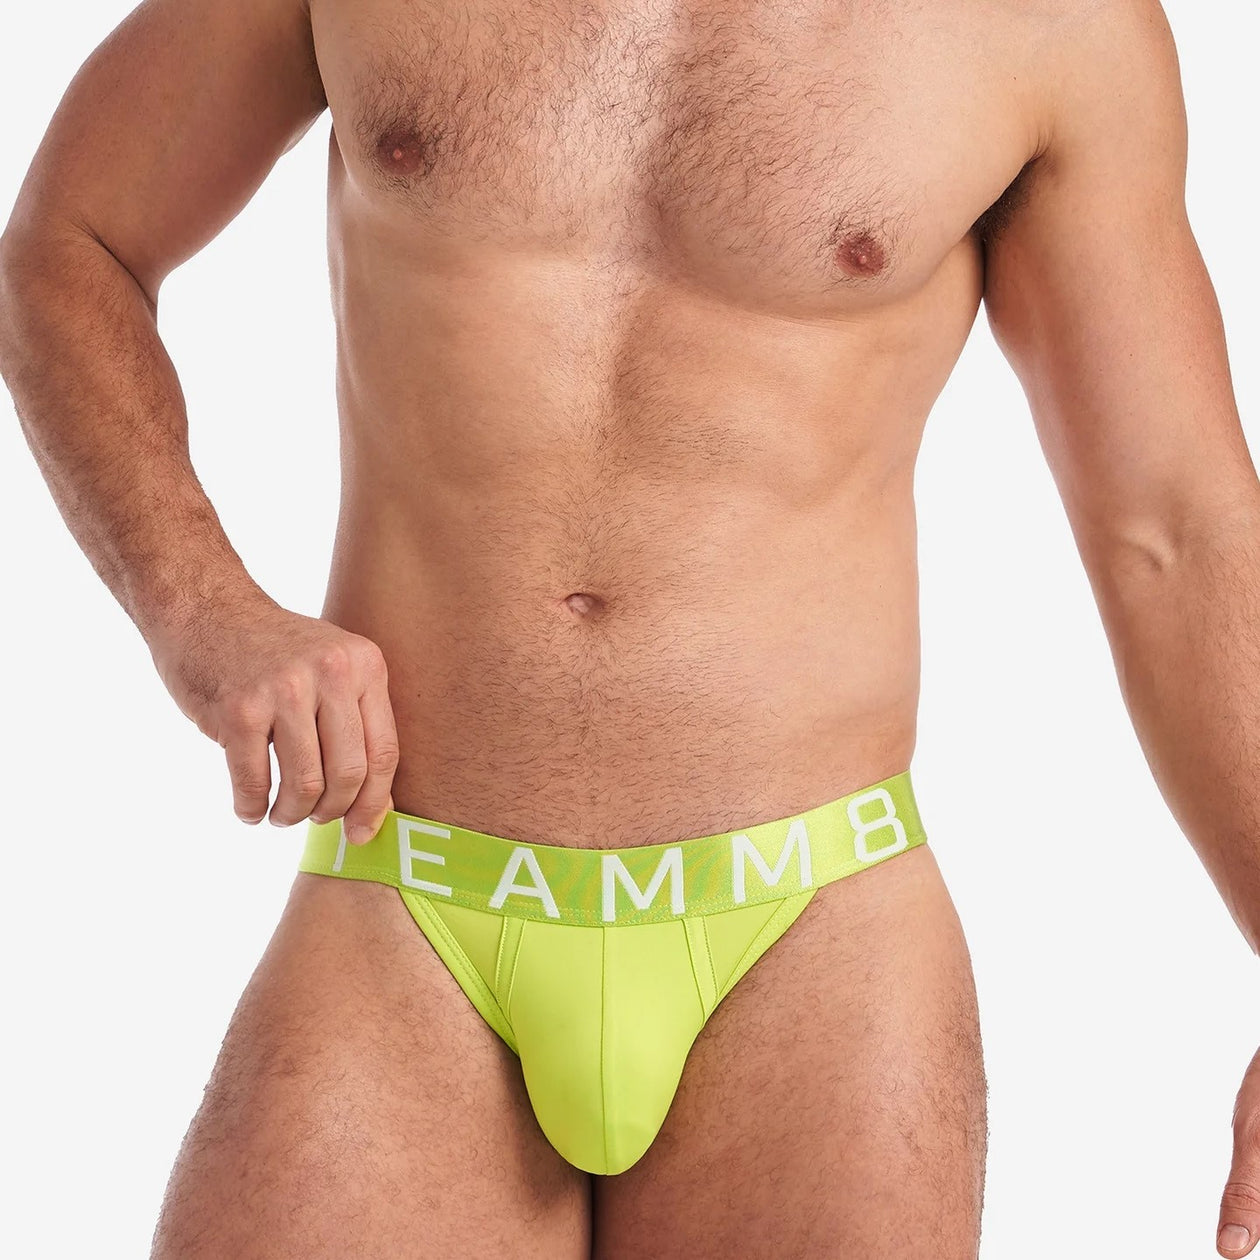 Teamm8 Spartacus brief lime punch – Egoist Underwear